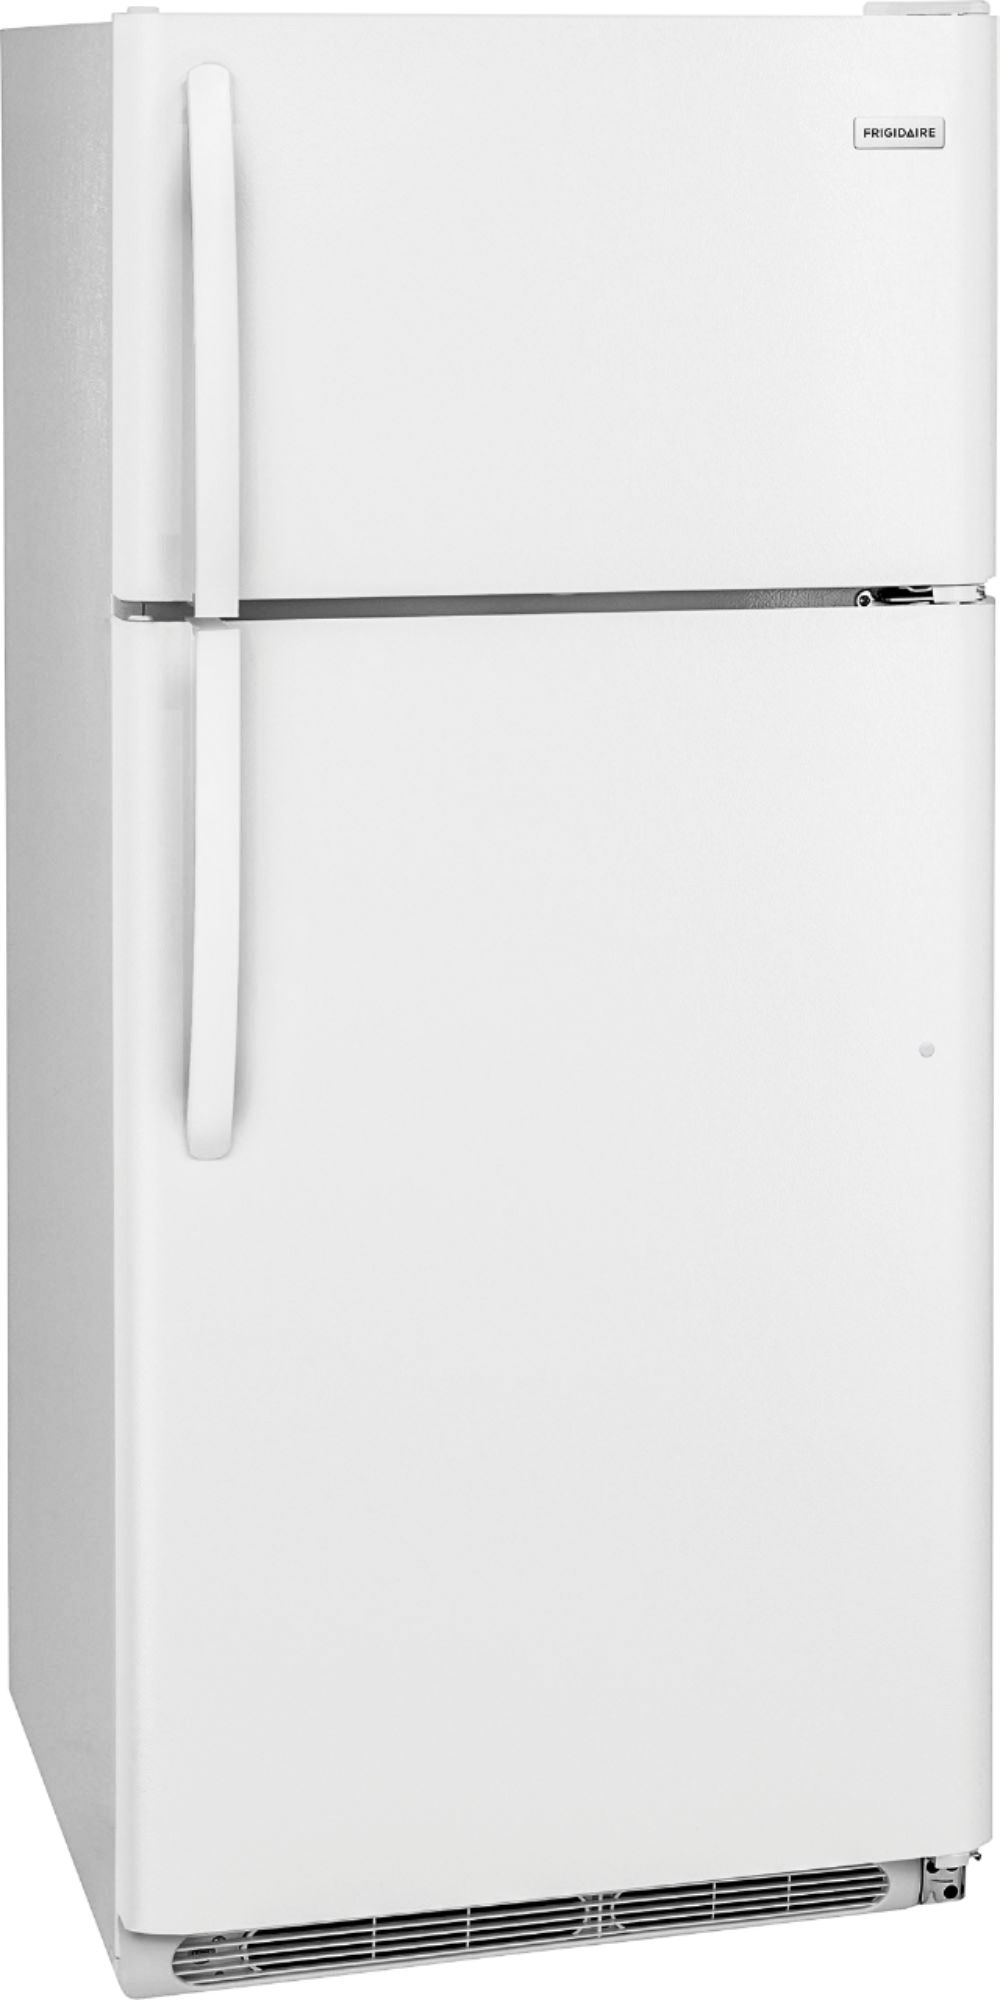 Angle View: Frigidaire - 18.1 Cu. Ft. Top-Freezer Refrigerator - White